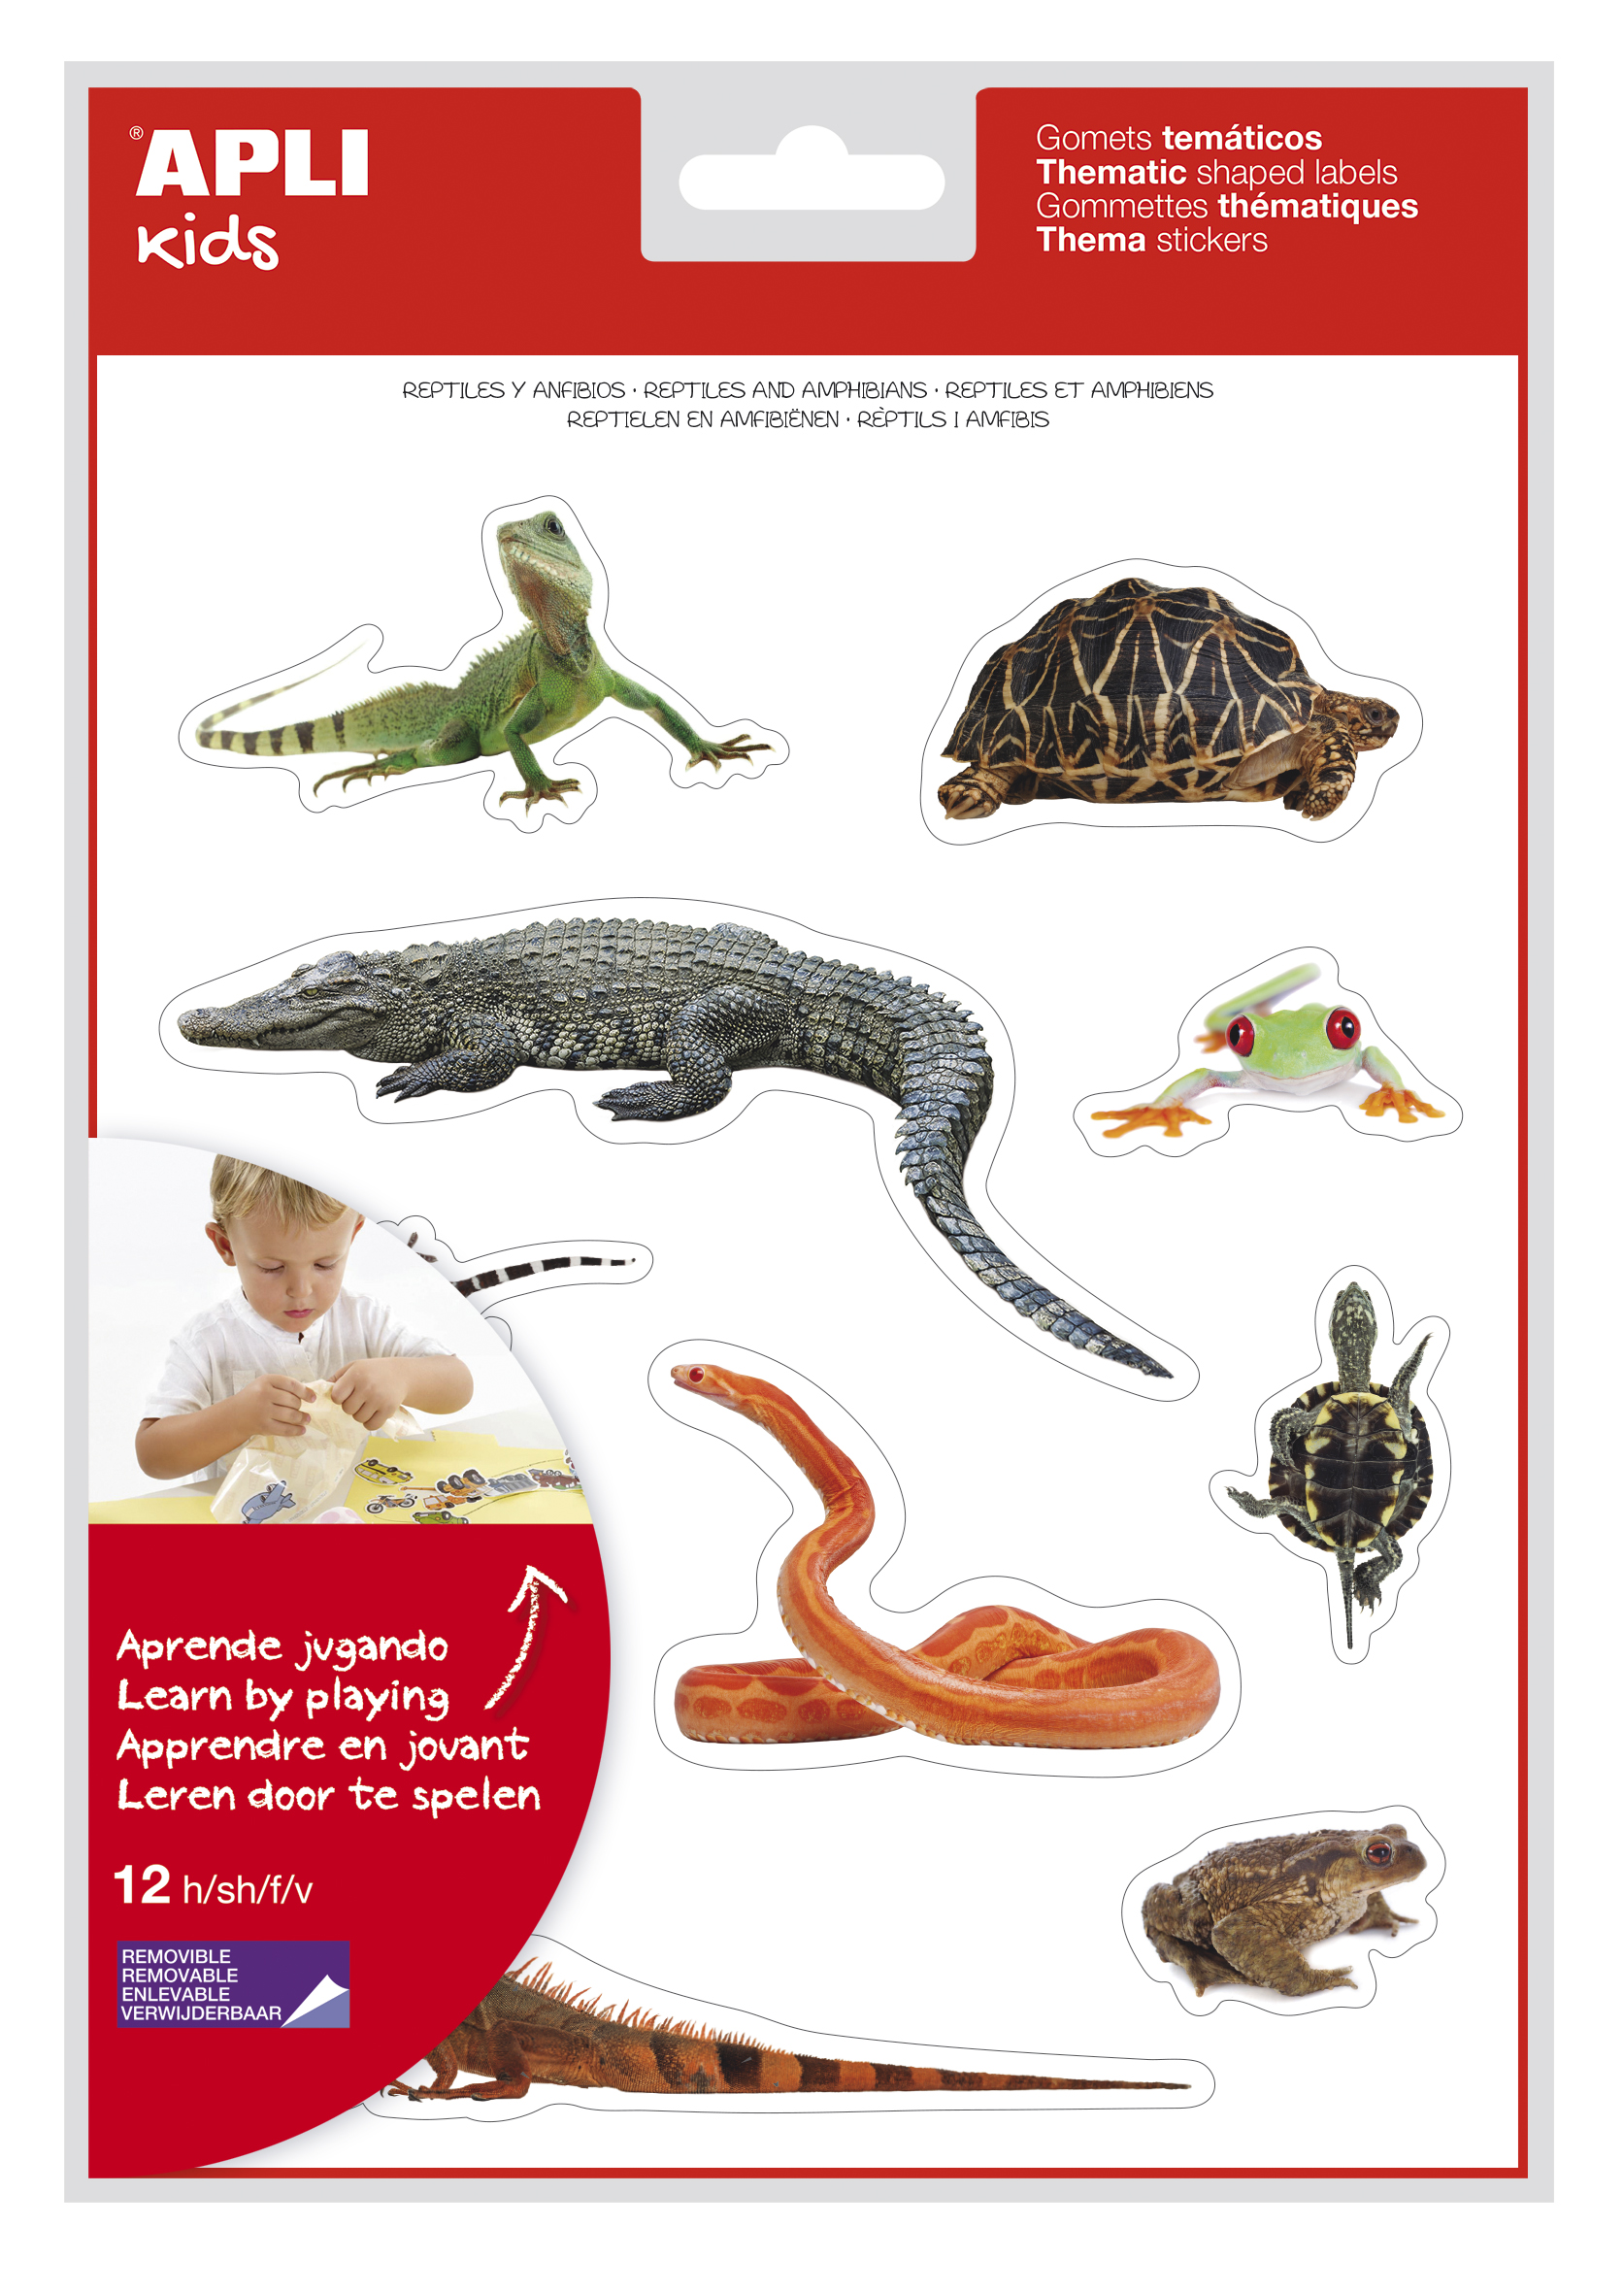 LOT de 5 Apli Gomets à thème réalistes de reptiles et d'amphibiens - 120 Gomets - Images réalistes pour correspondre aux animaux - Adhésif amovible - Idéal pour les écoles - Recyclable - Coloré